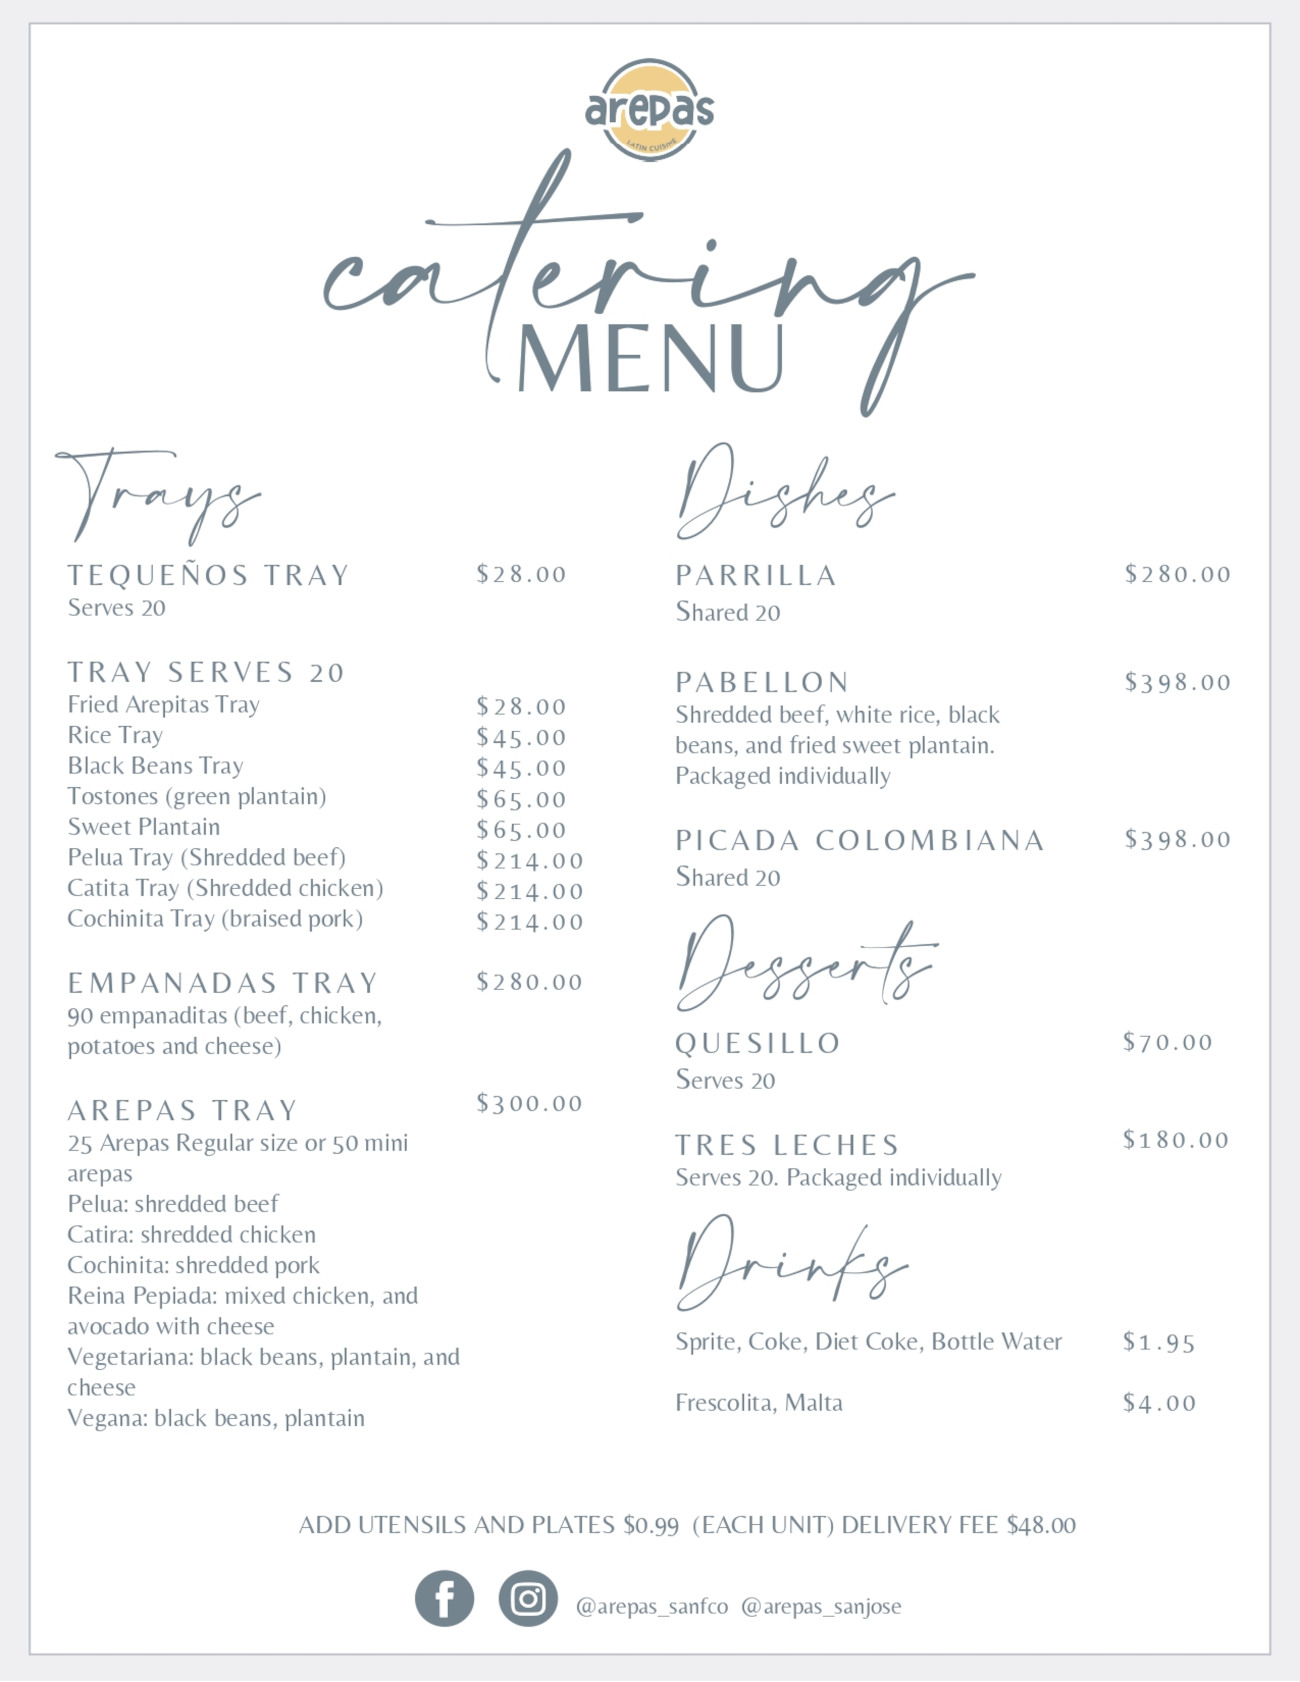 Catering menu